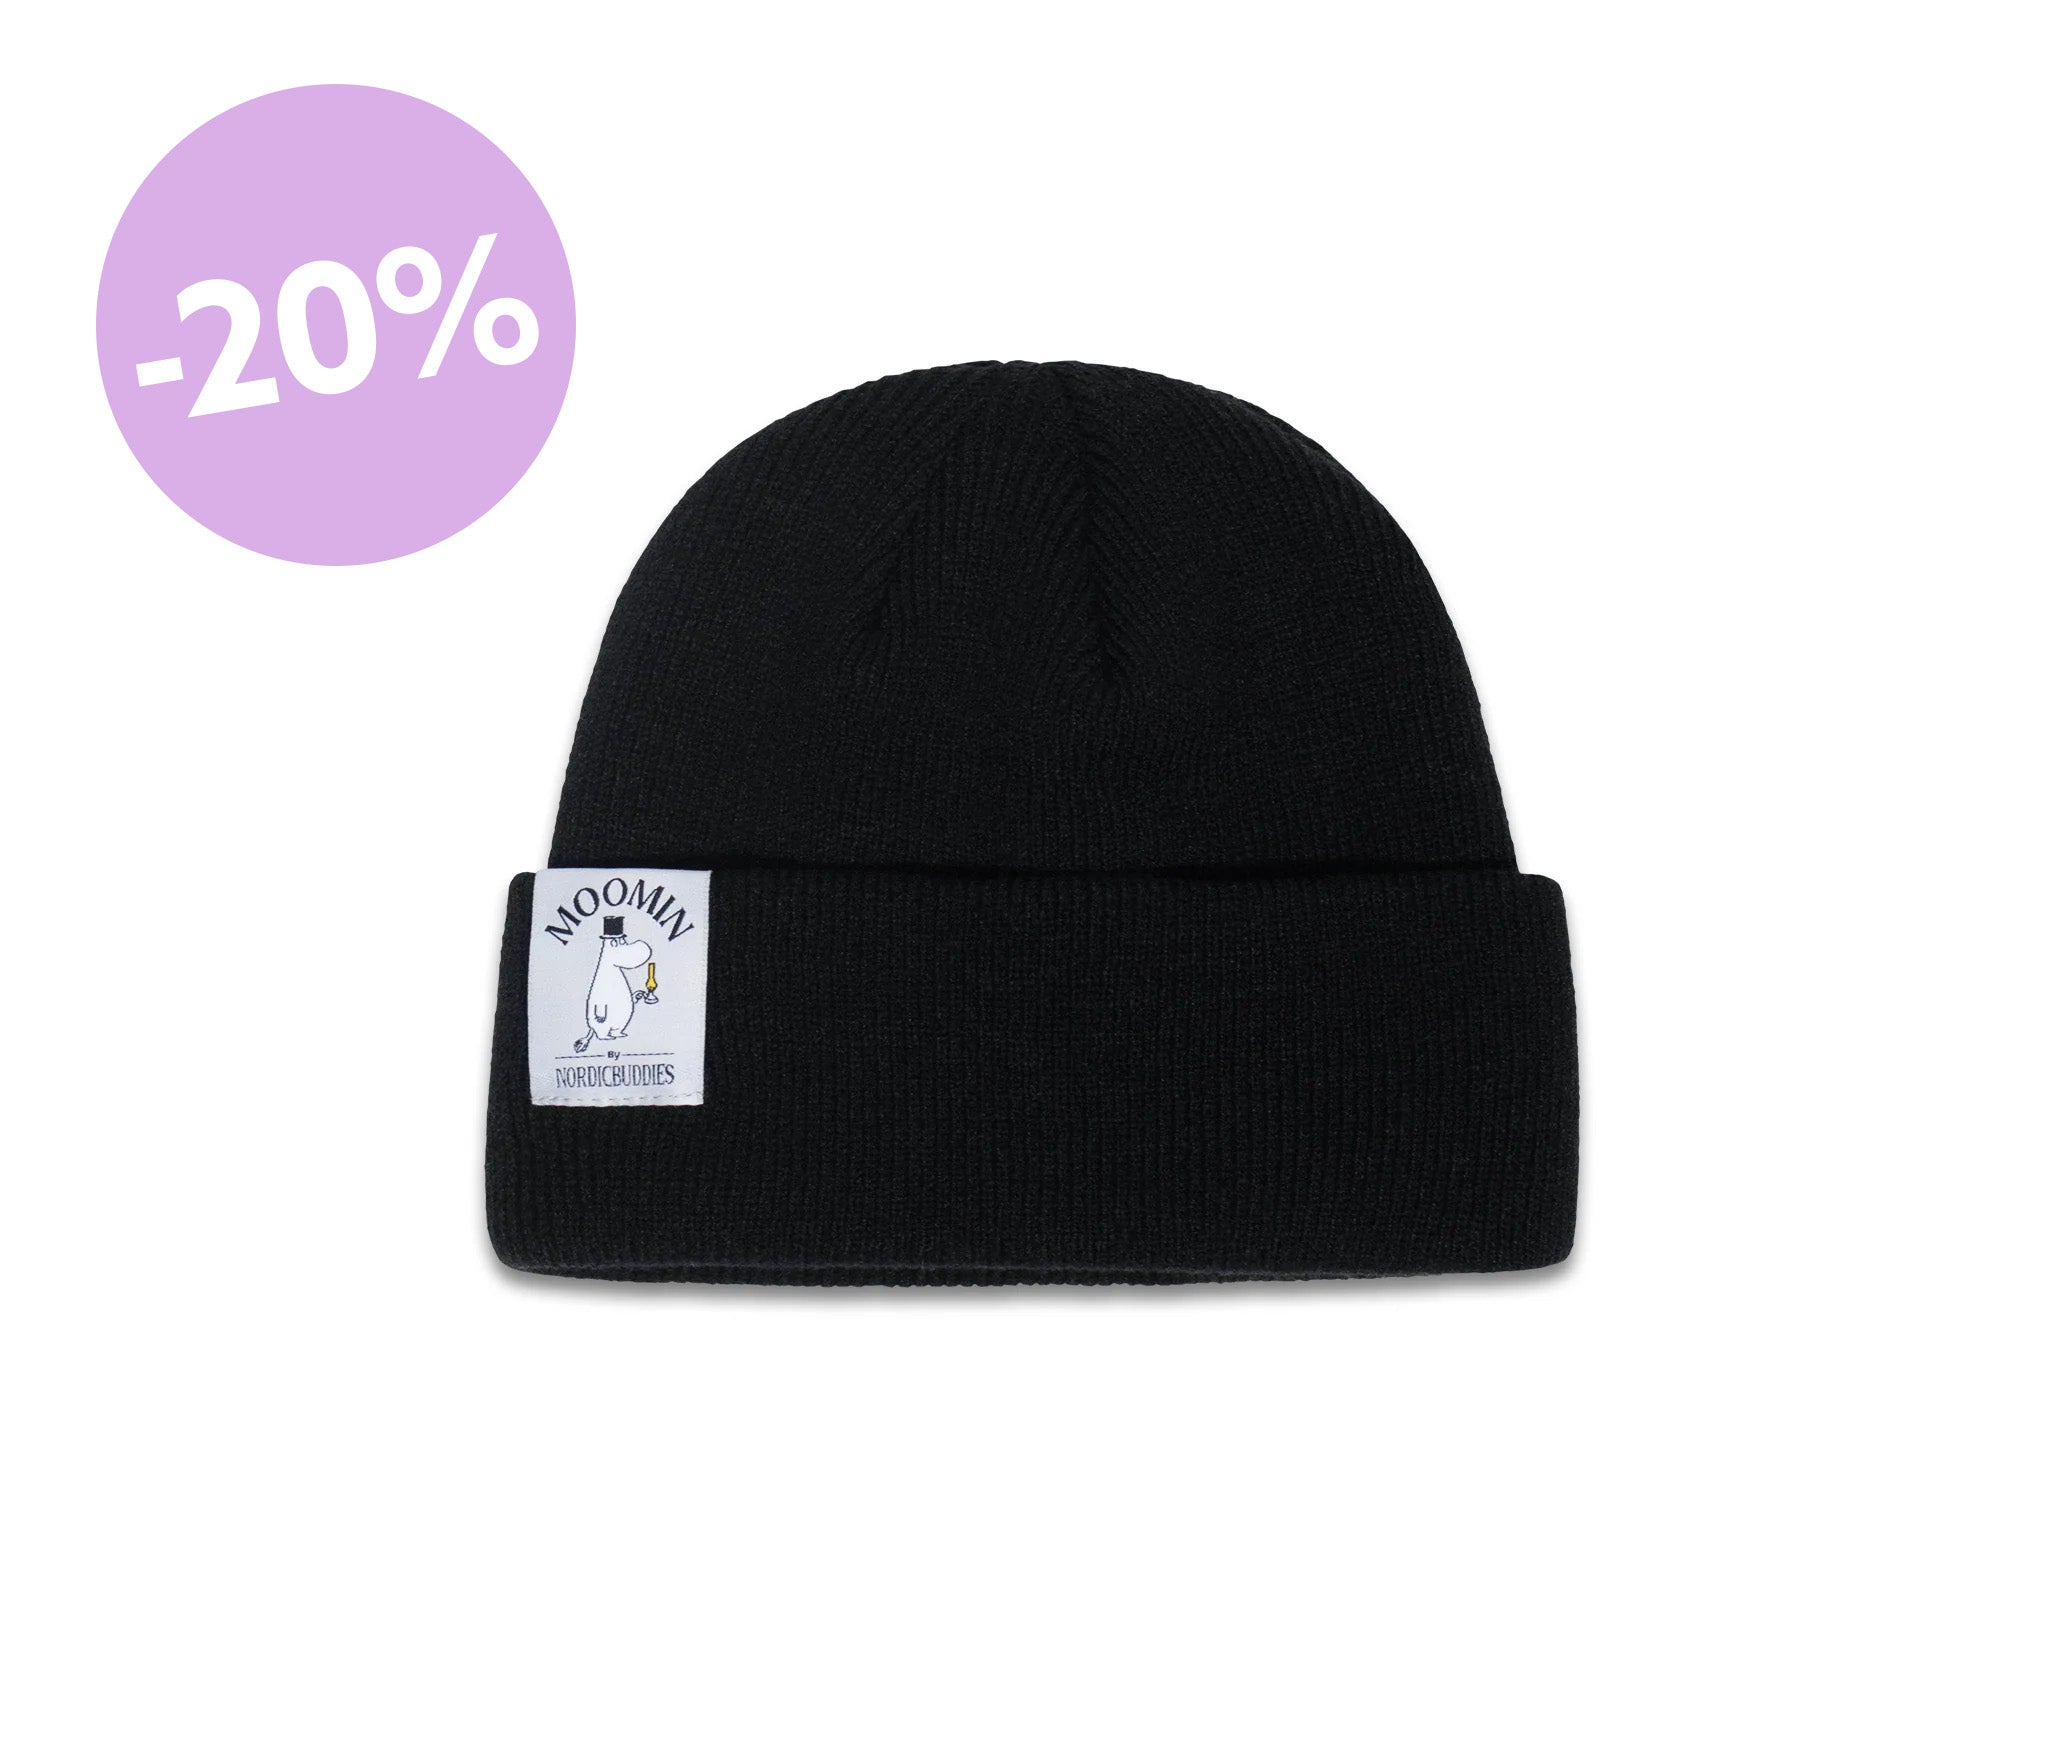 Moominpappa Winter Hat Beanie Adult - Black